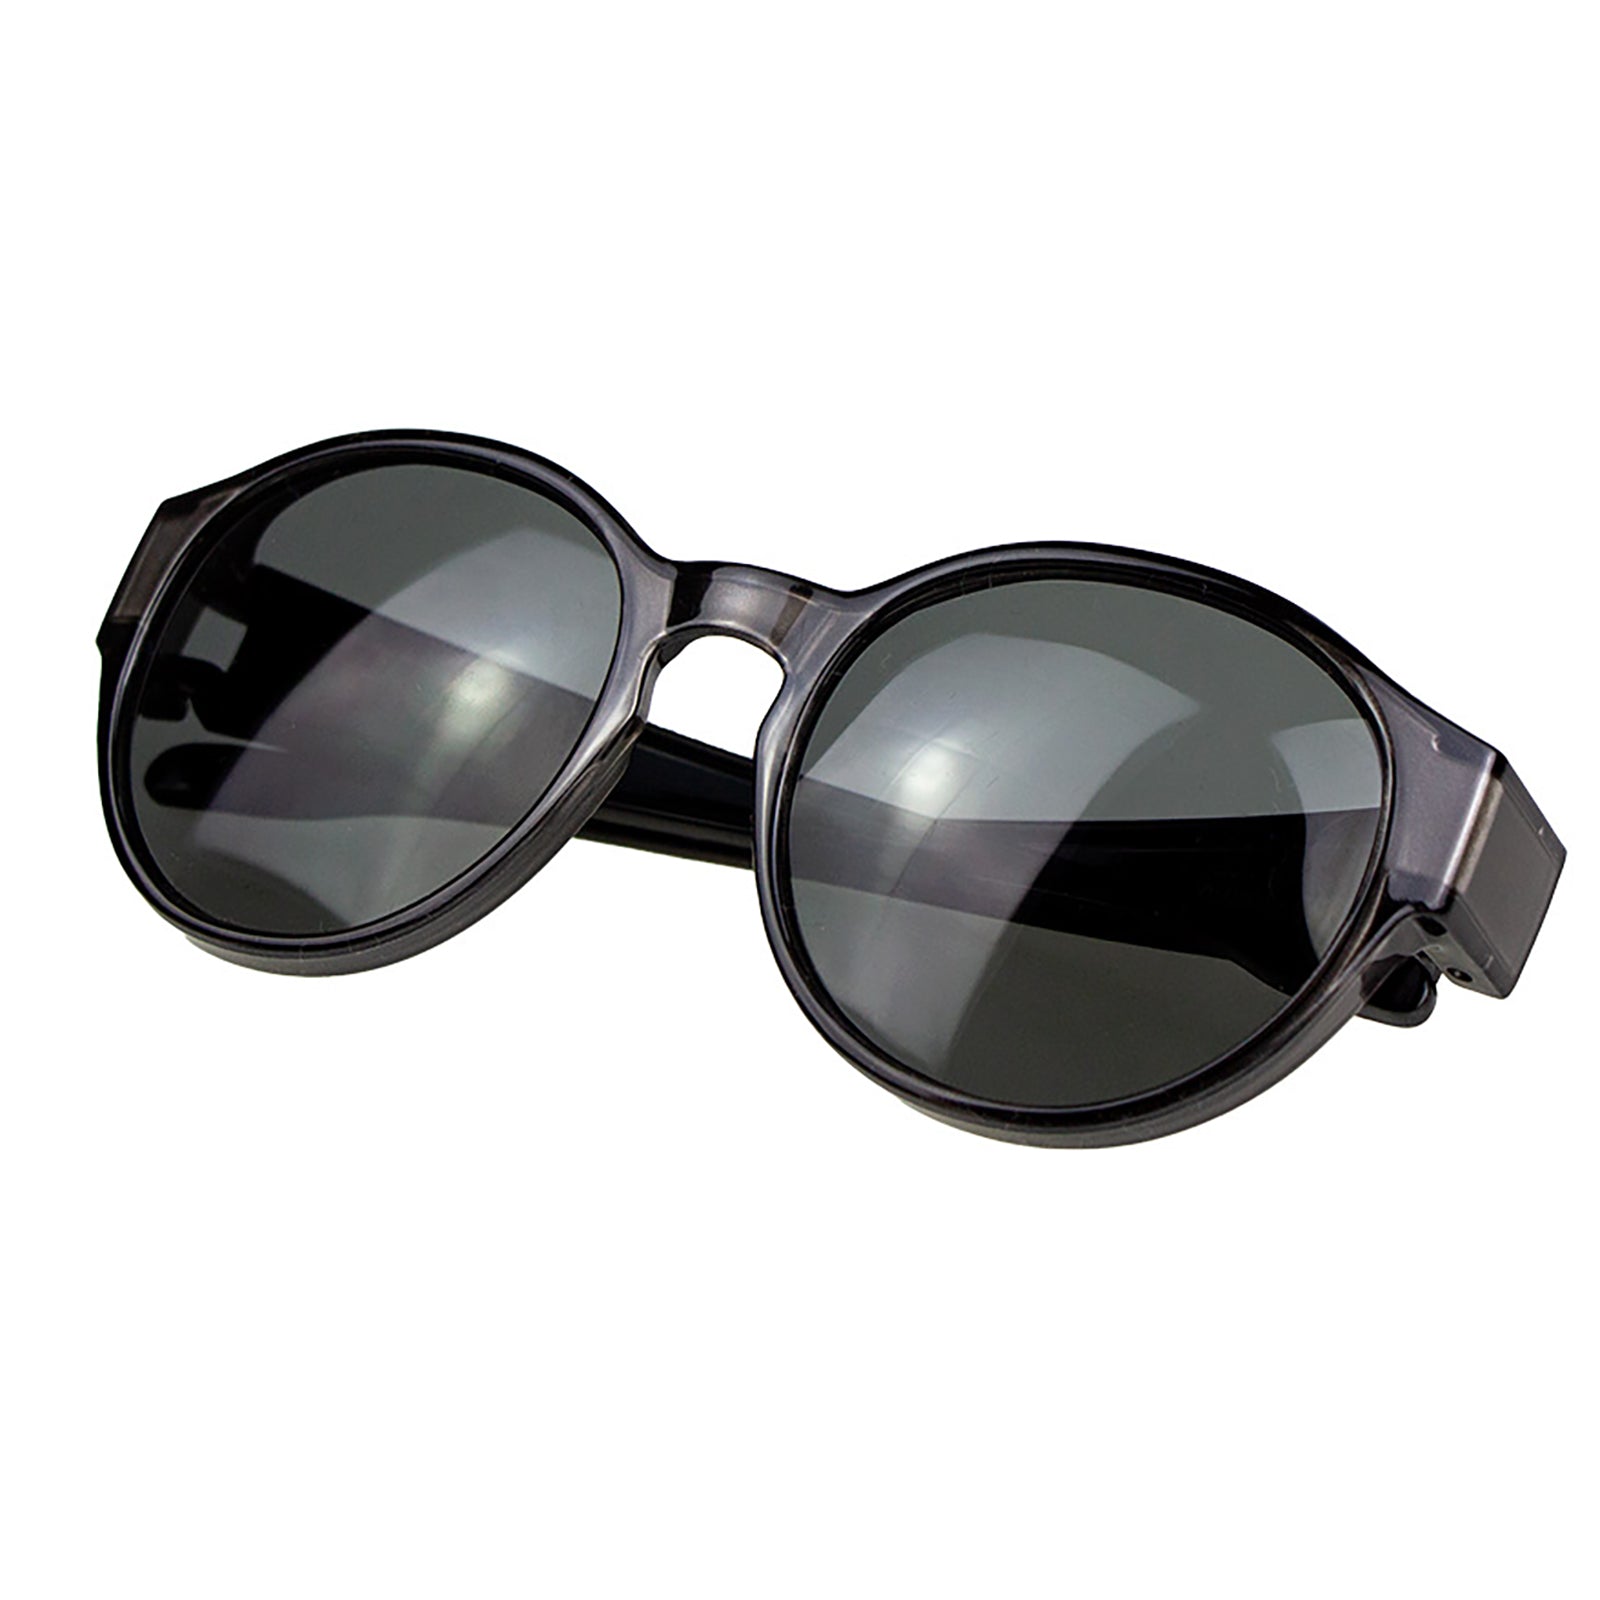 Überzieh-Sonnenbrille Rhea, für Brillenträger , Schwarz